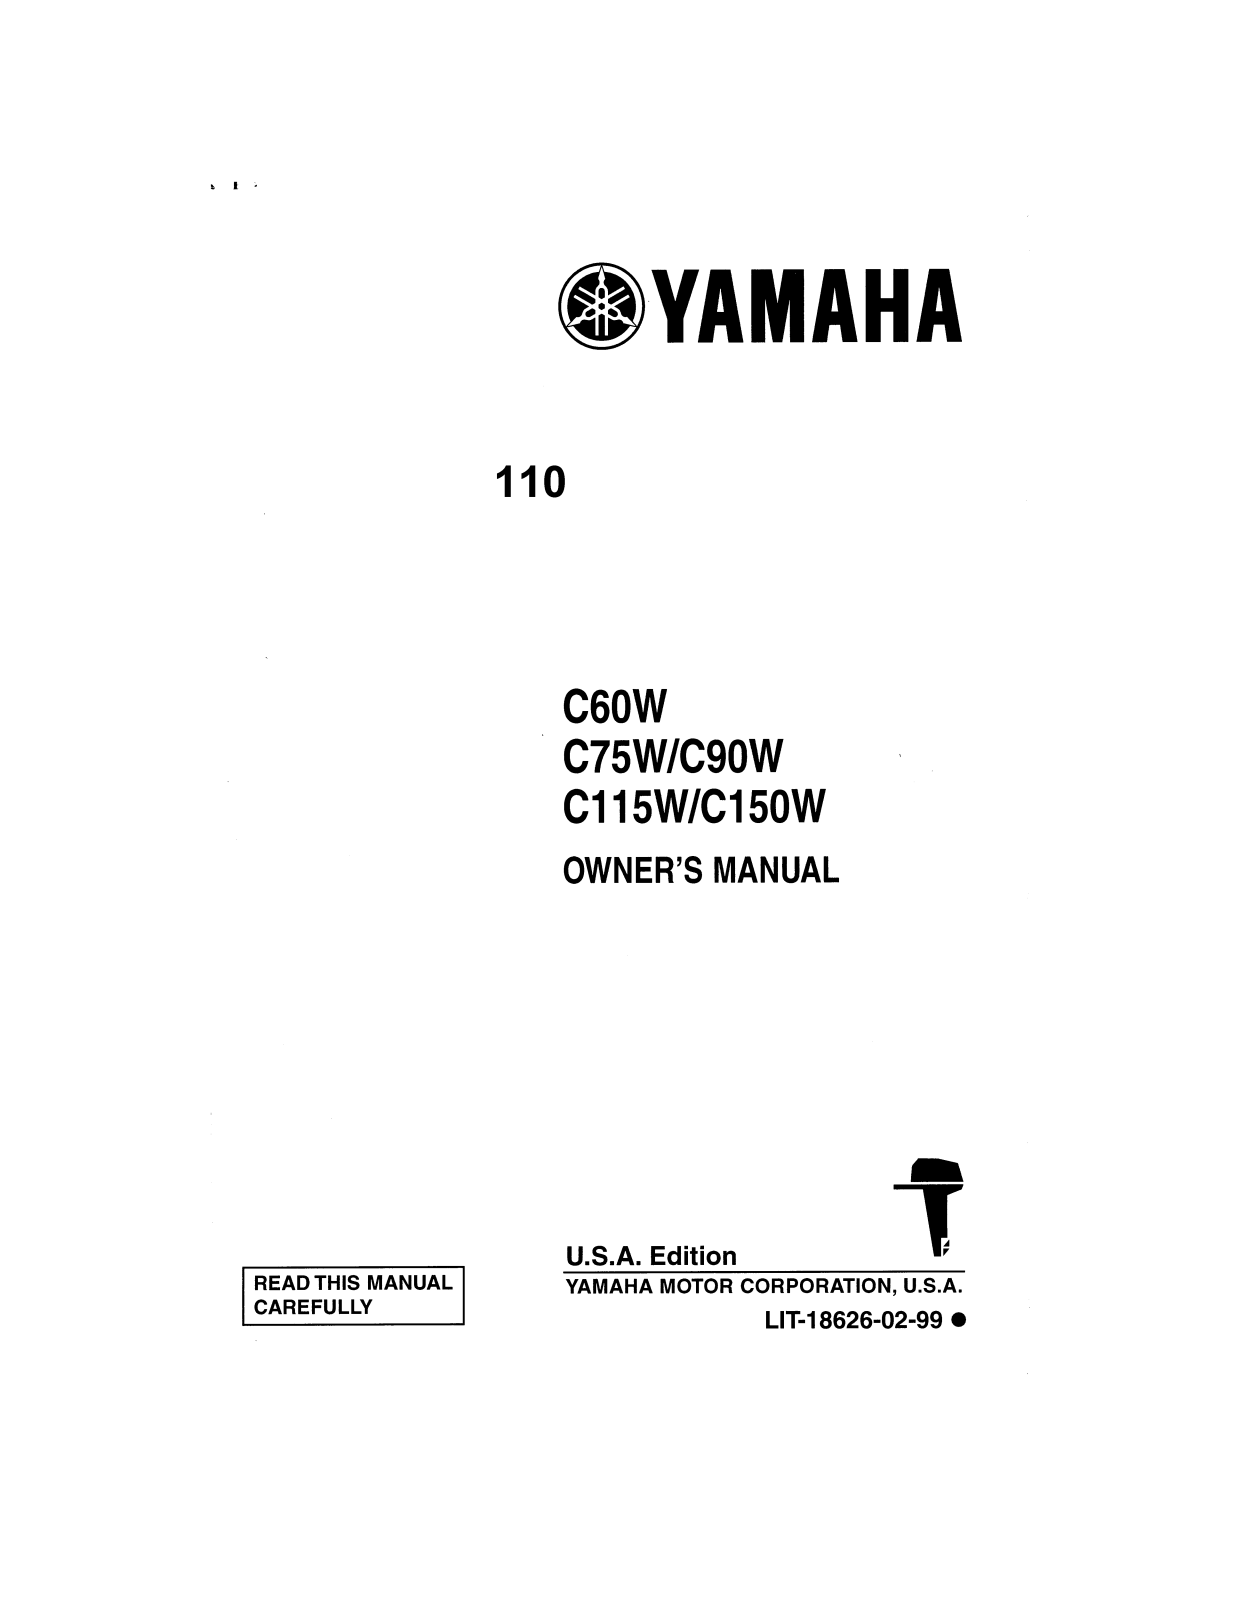 Yamaha C60W, C75W, C90W, C115W, C150W Manual